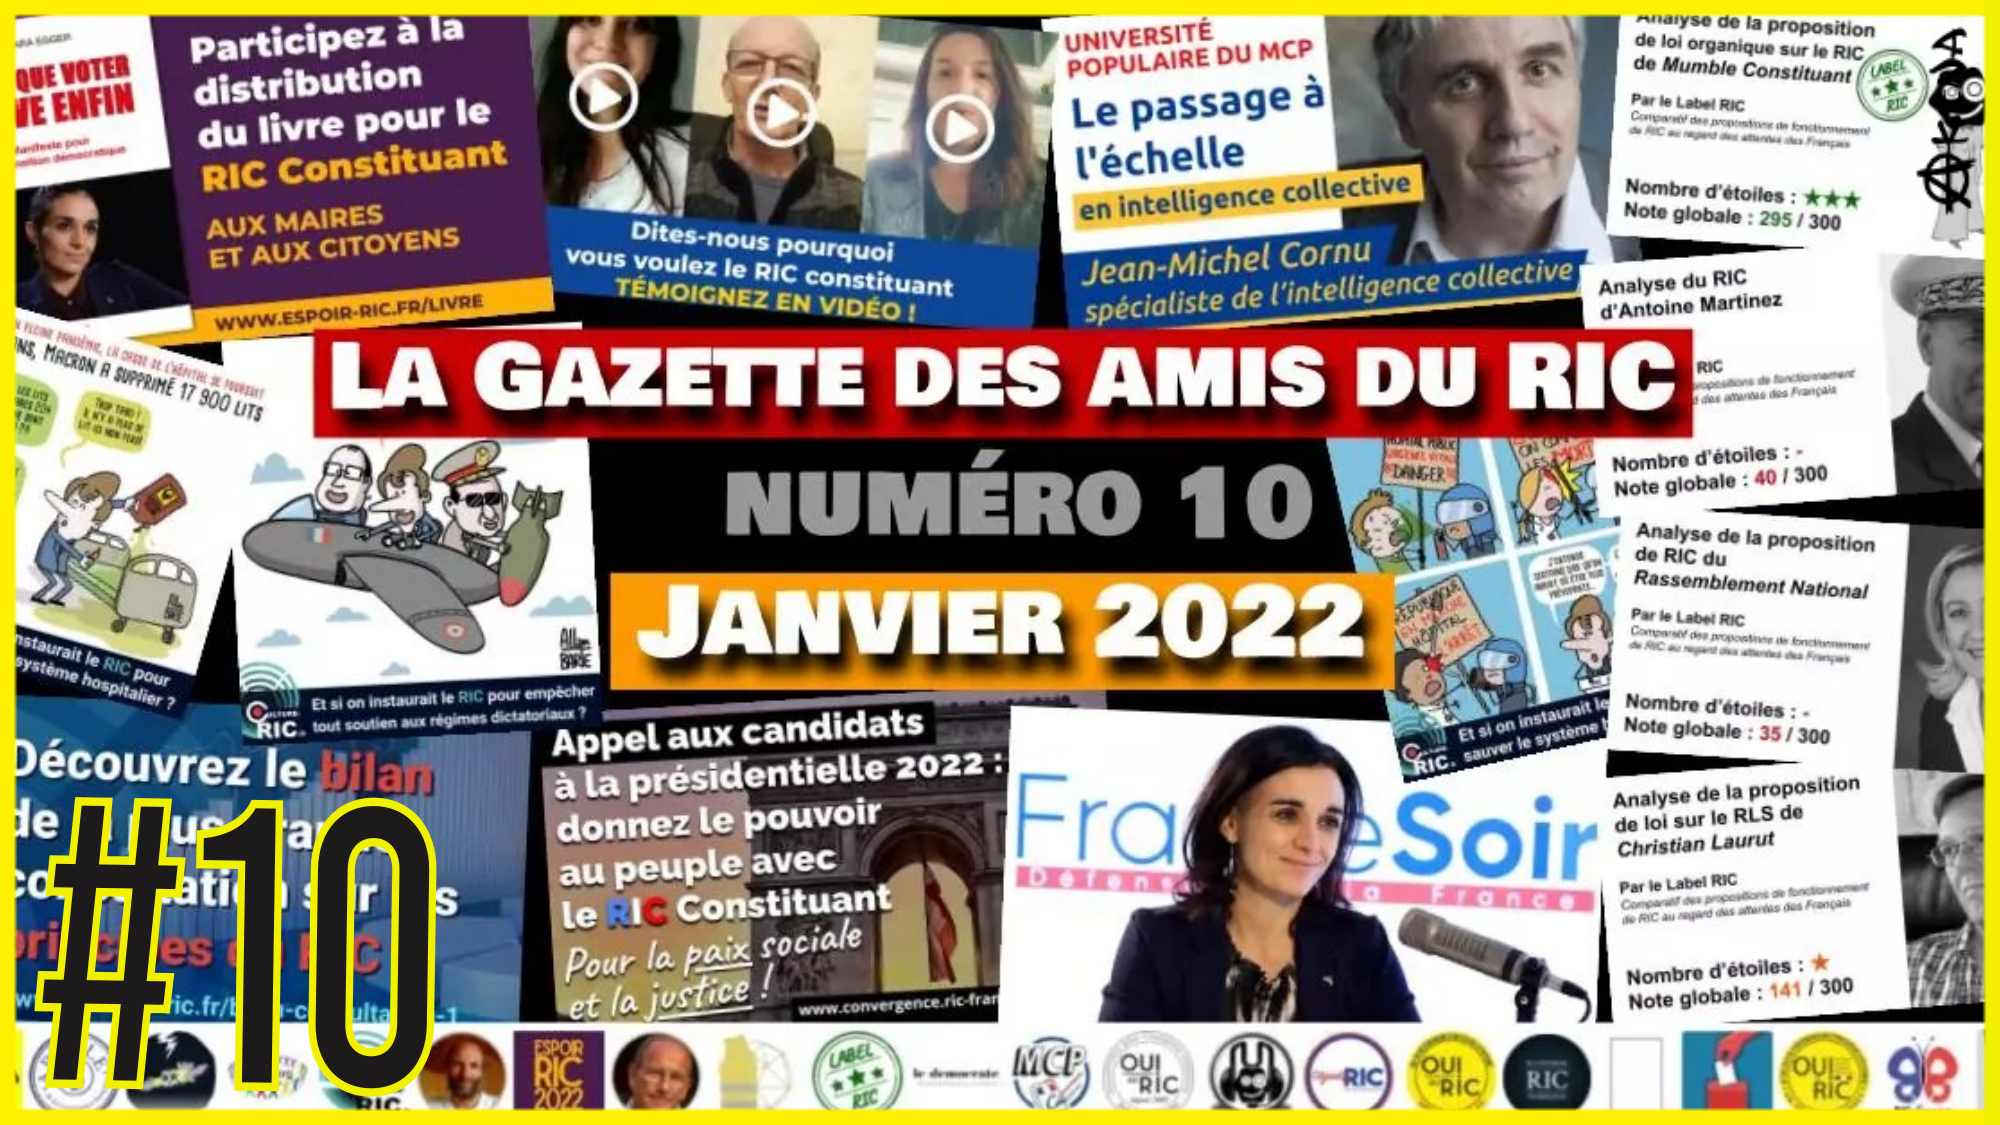 📰 La Gazette des amis du RIC #10 🎯 Convergence RIC France 📅 Janvier 2022 🗣 Akina